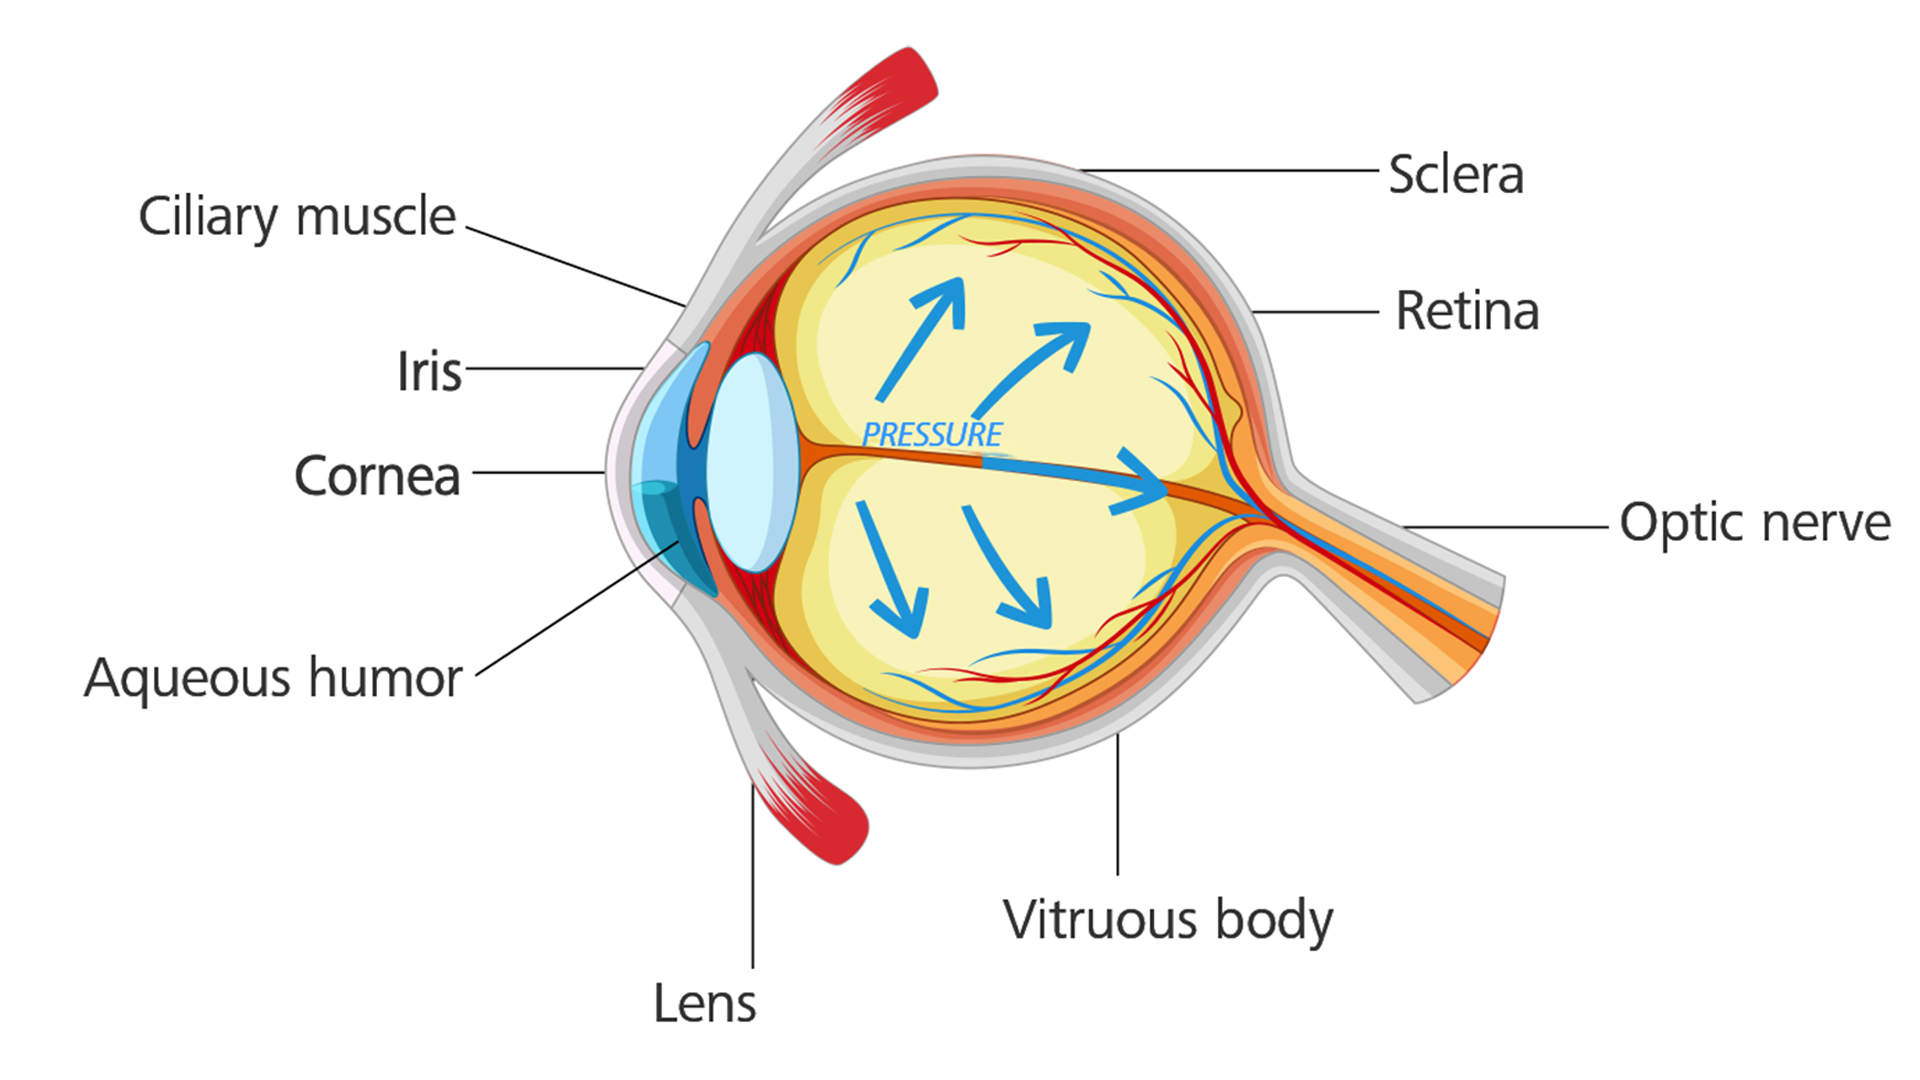 Olho com glaucoma: a tensão ocular aumenta e lesiona o nervo ótico.